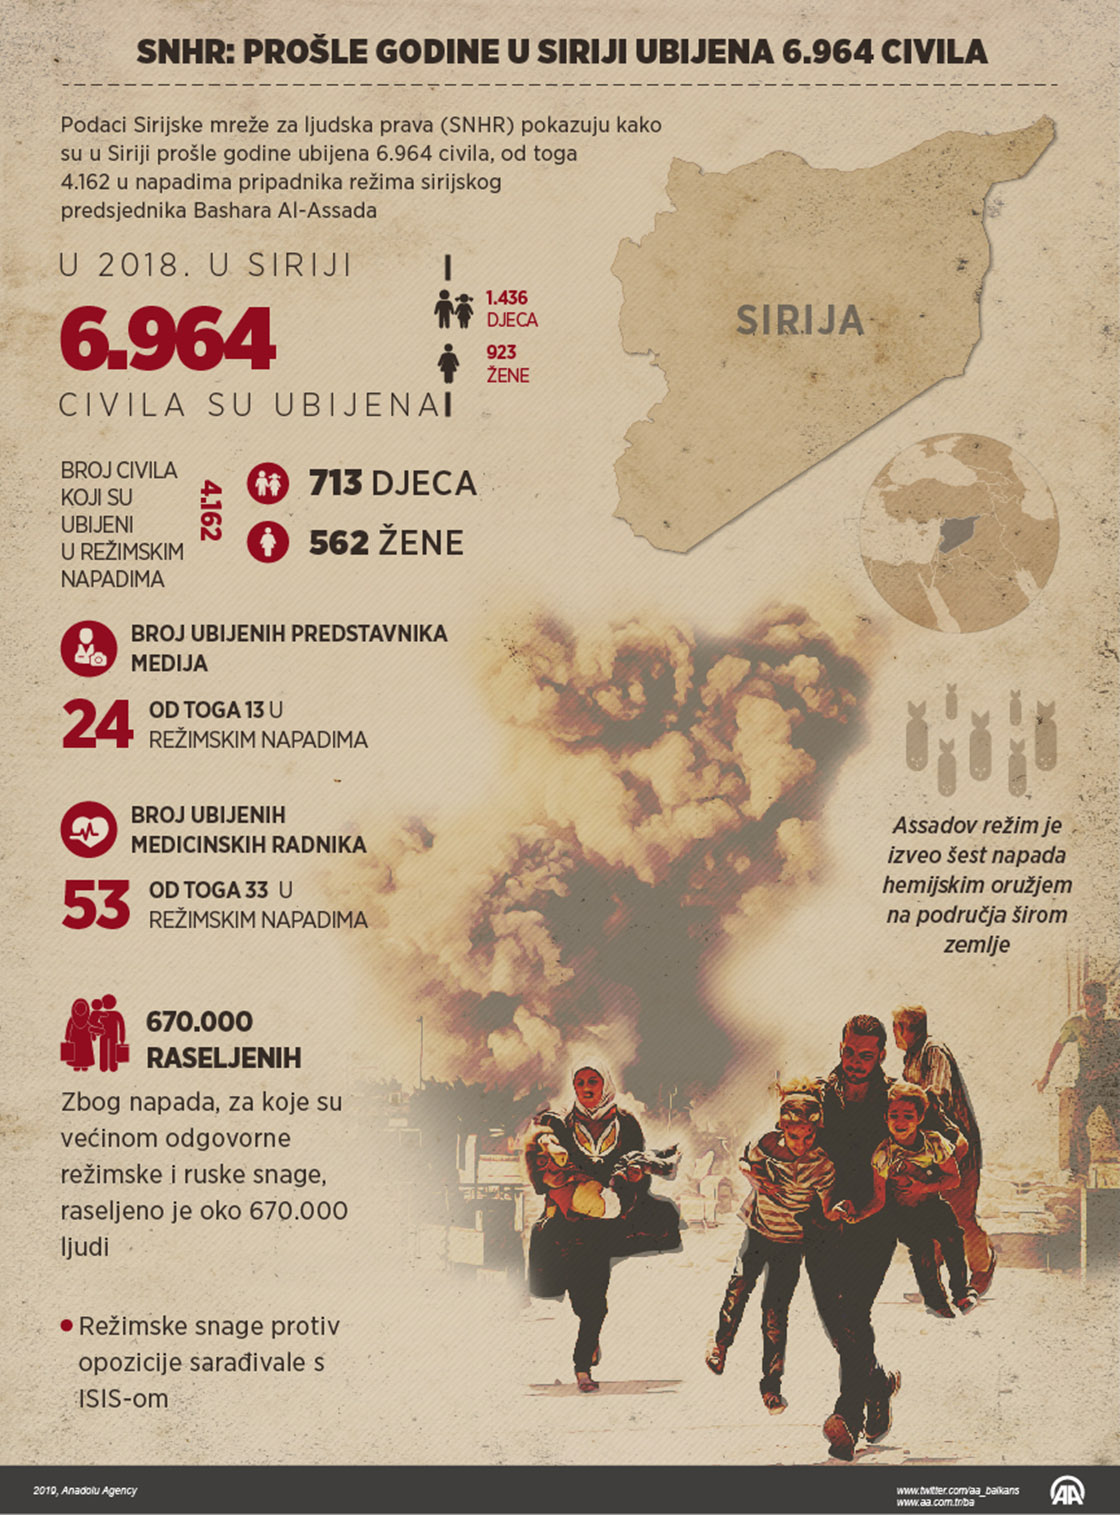 Prošle godine u Siriji ubijeno 6.964 civila, većina stradala u režimskim napadima